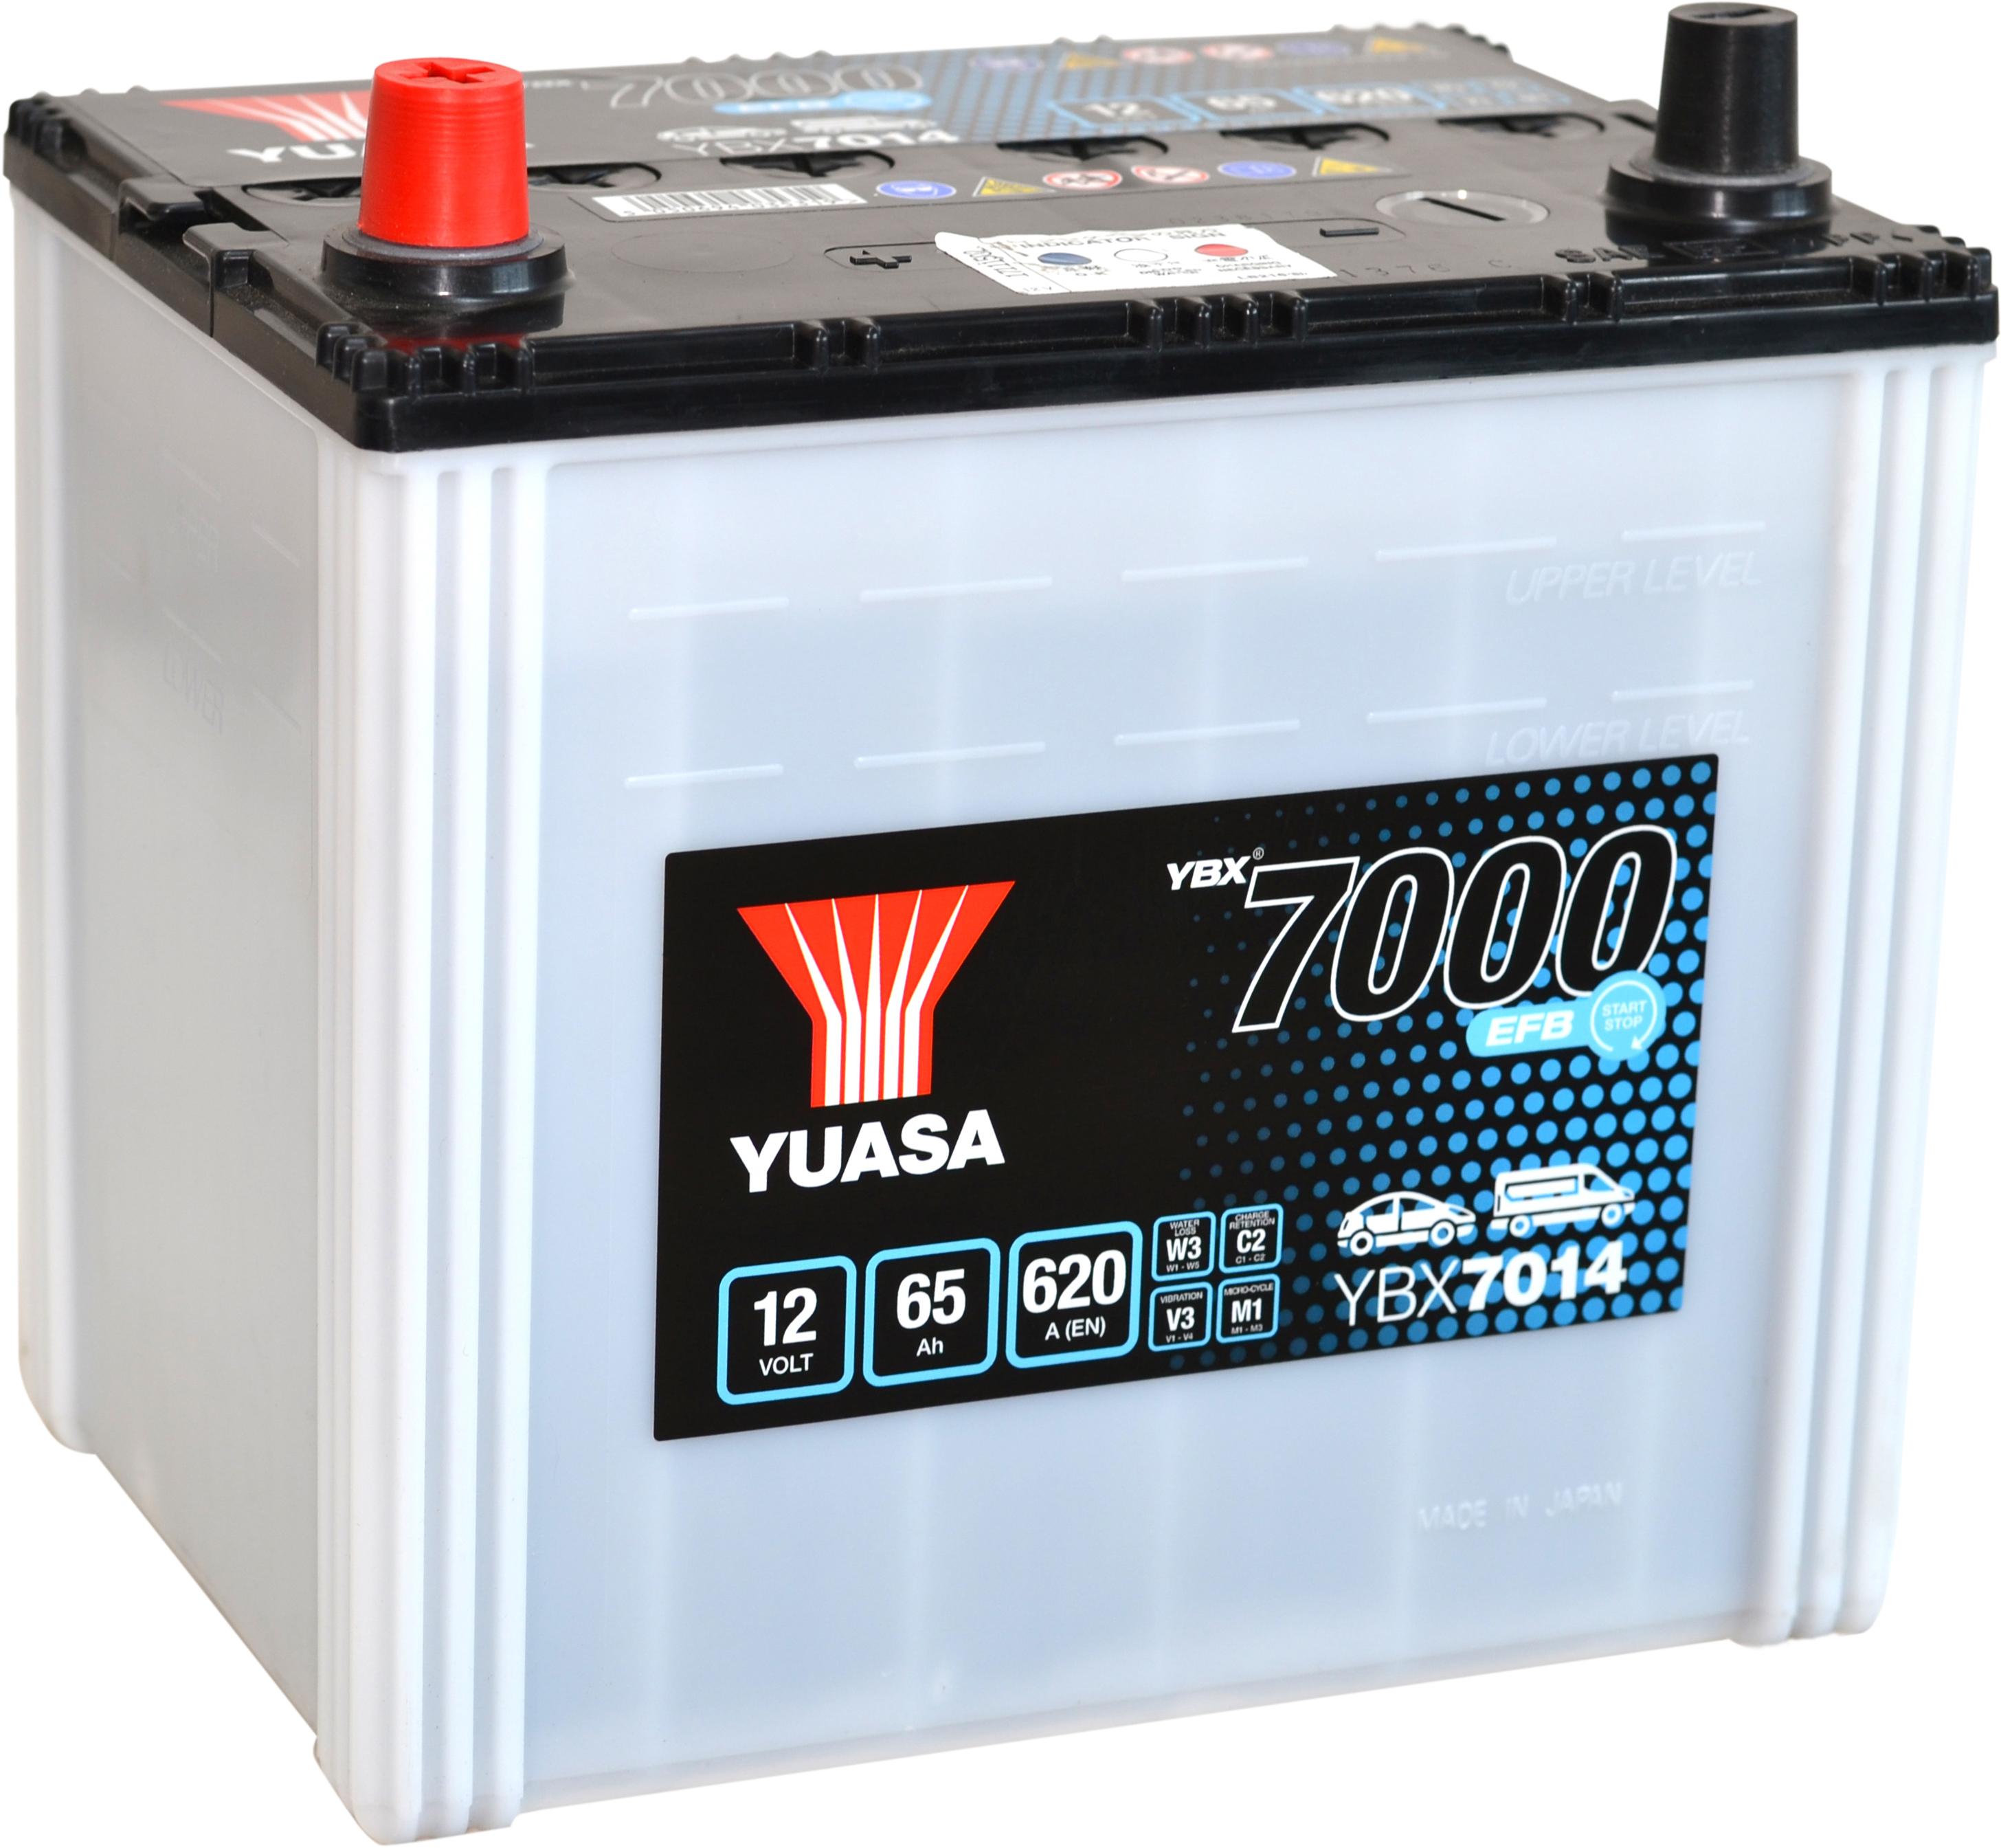 Ybx7014 (Q85R) 12V 65Ah 620A Yuasa Efb Start Stop Battery